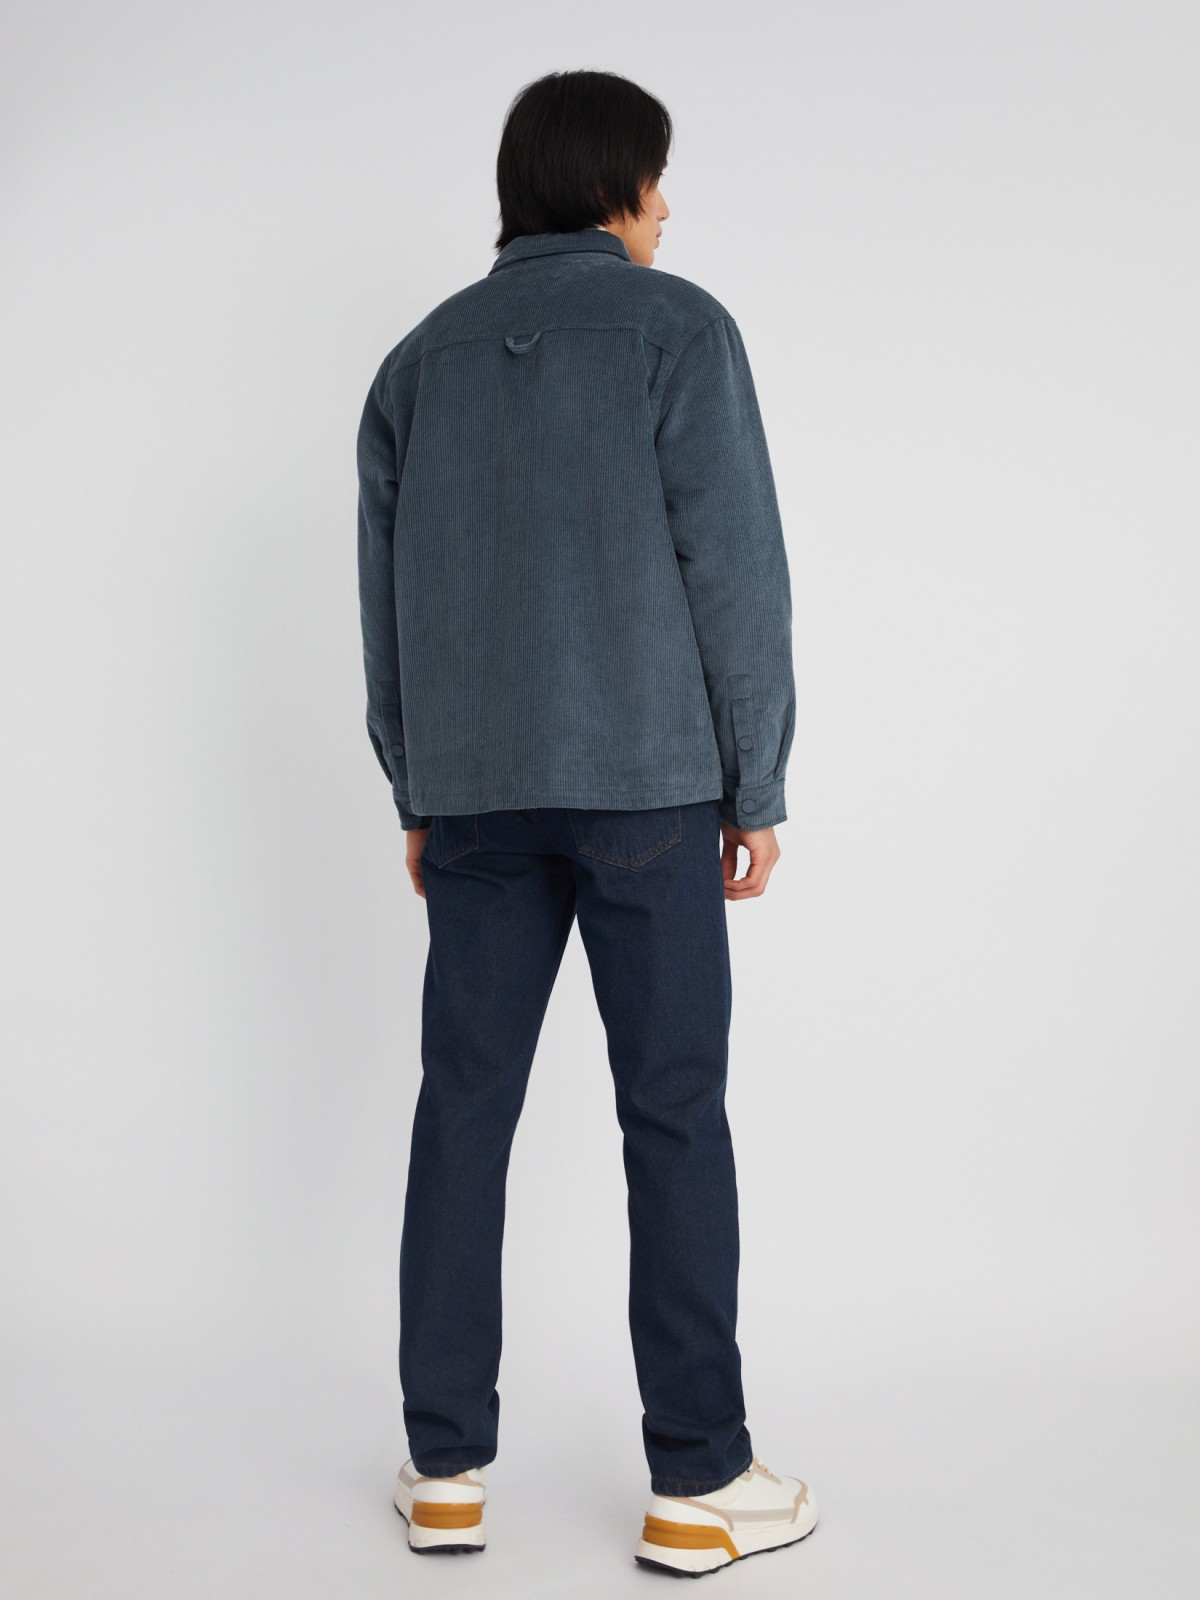 Утеплённая вельветовая куртка-рубашка на синтепоне zolla 013325159134, цвет синий, размер M - фото 6